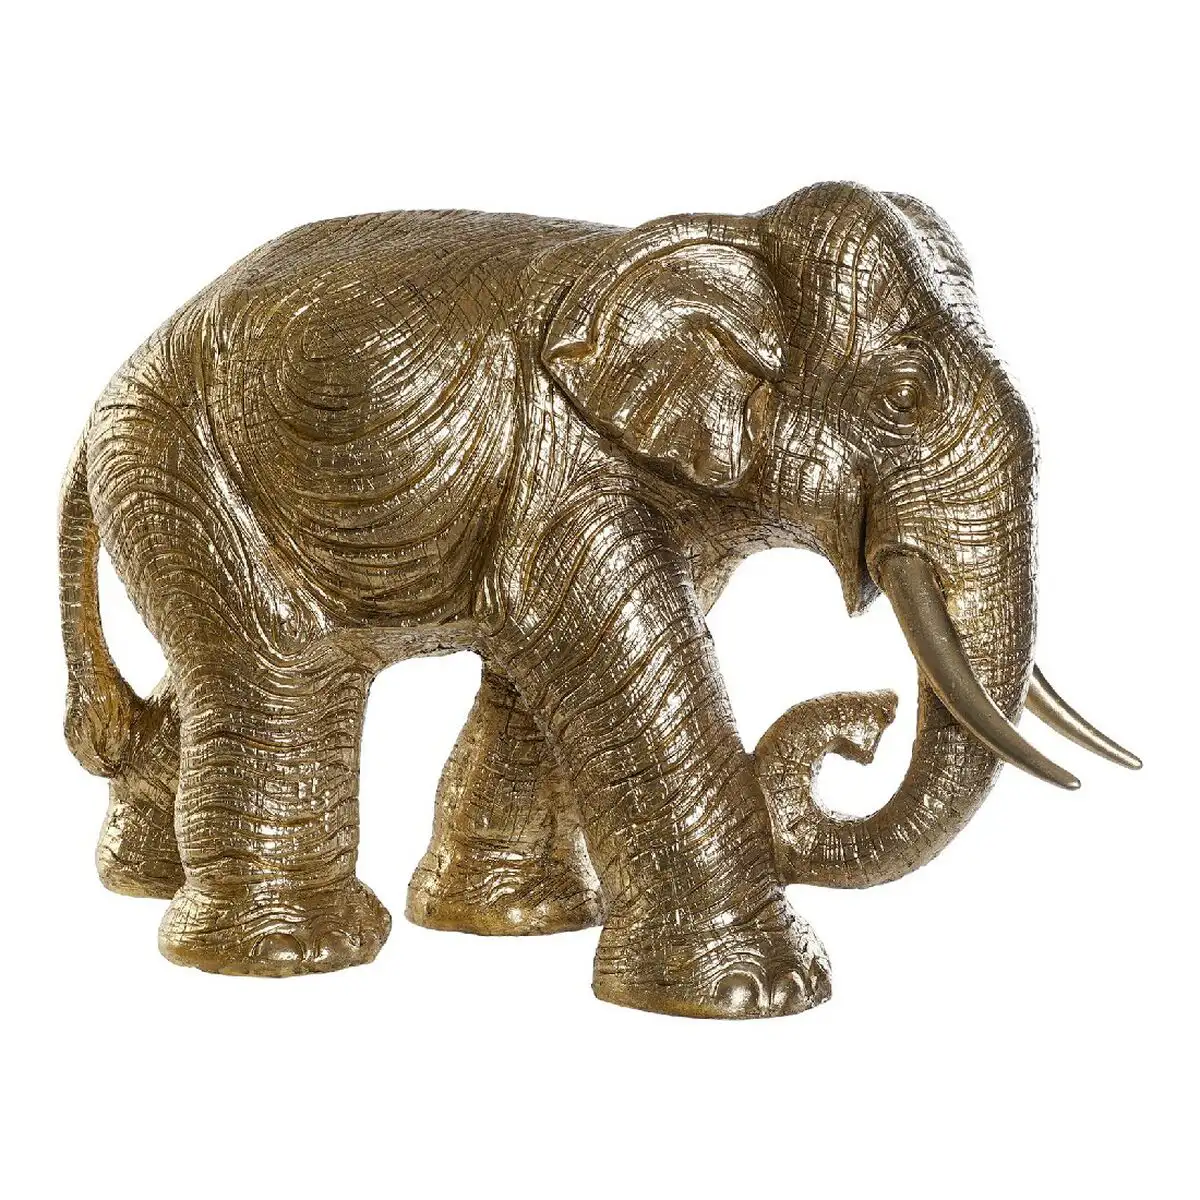 Figurine decorative dkd home decor rf 177265 dore resine elephant colonial 83 x 32 x 56 cm_3503. DIAYTAR SENEGAL - Votre Destinée Shopping Personnalisée. Plongez dans notre boutique en ligne et créez votre propre expérience de shopping en choisissant parmi nos produits variés.